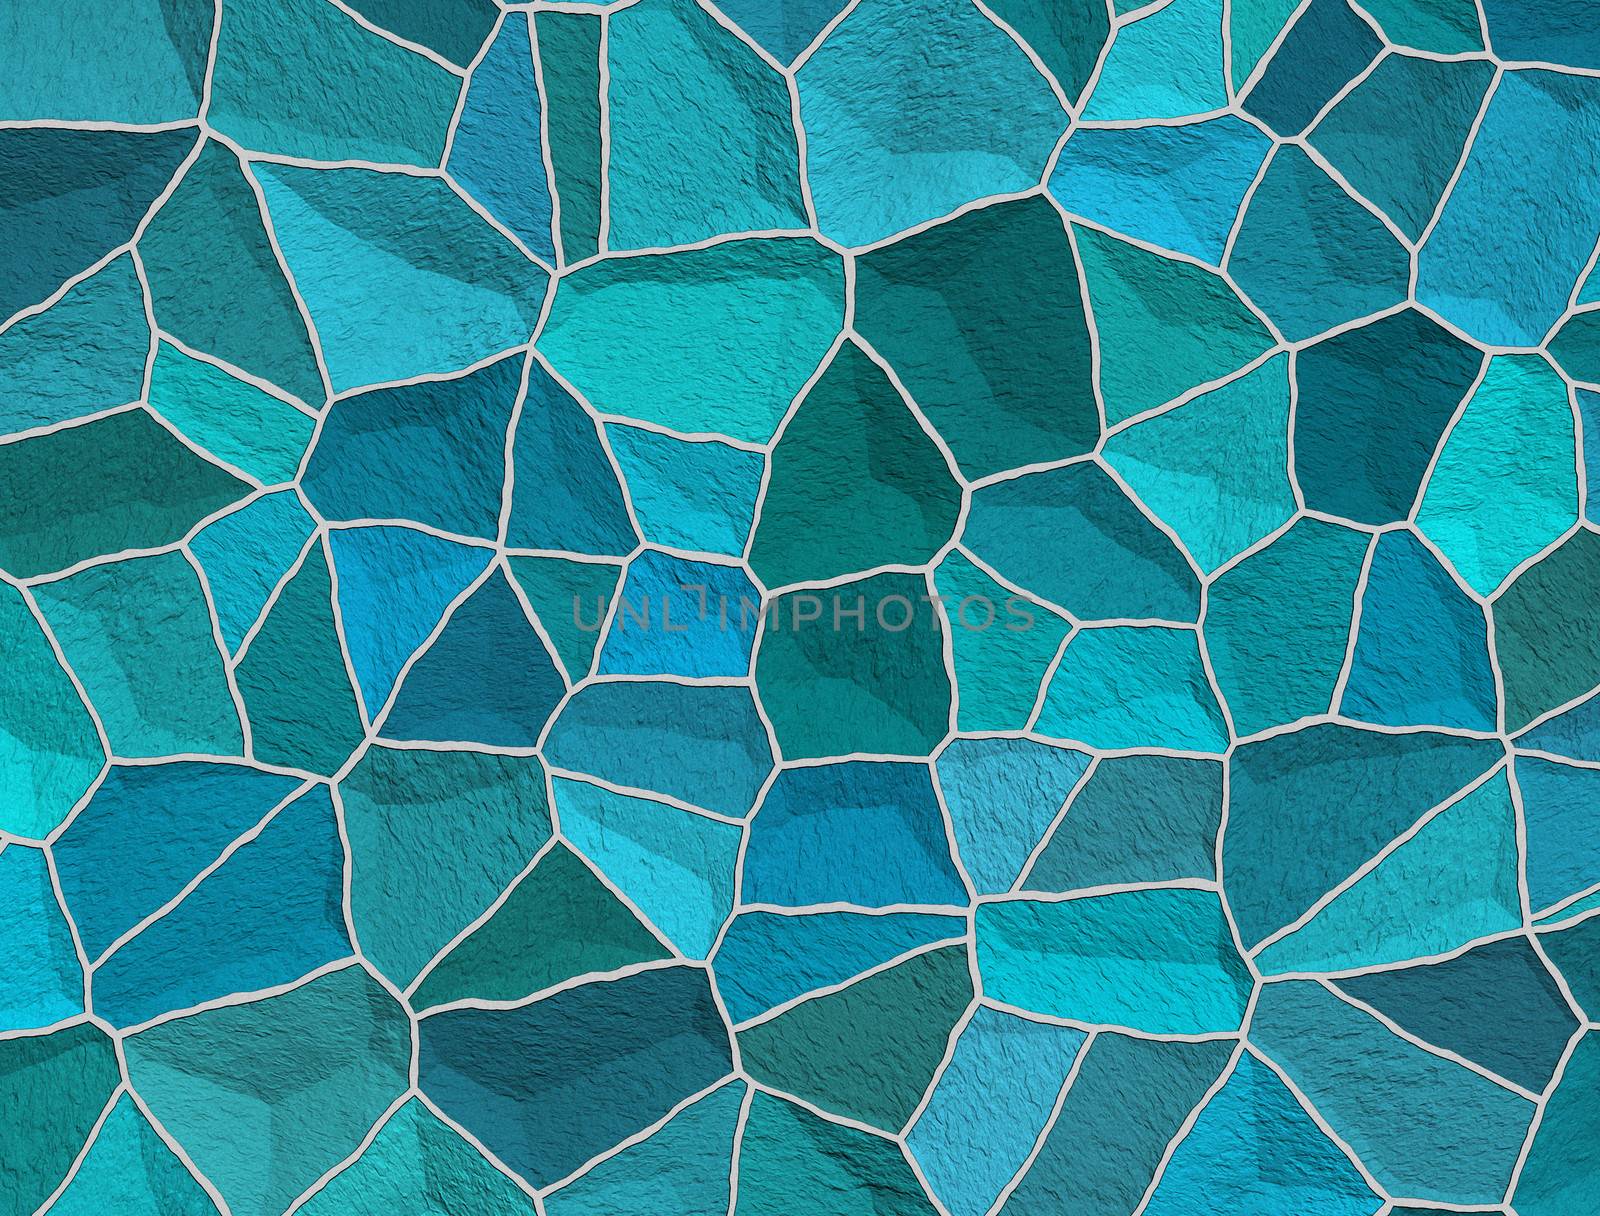 Broken tiles pattern by sfinks